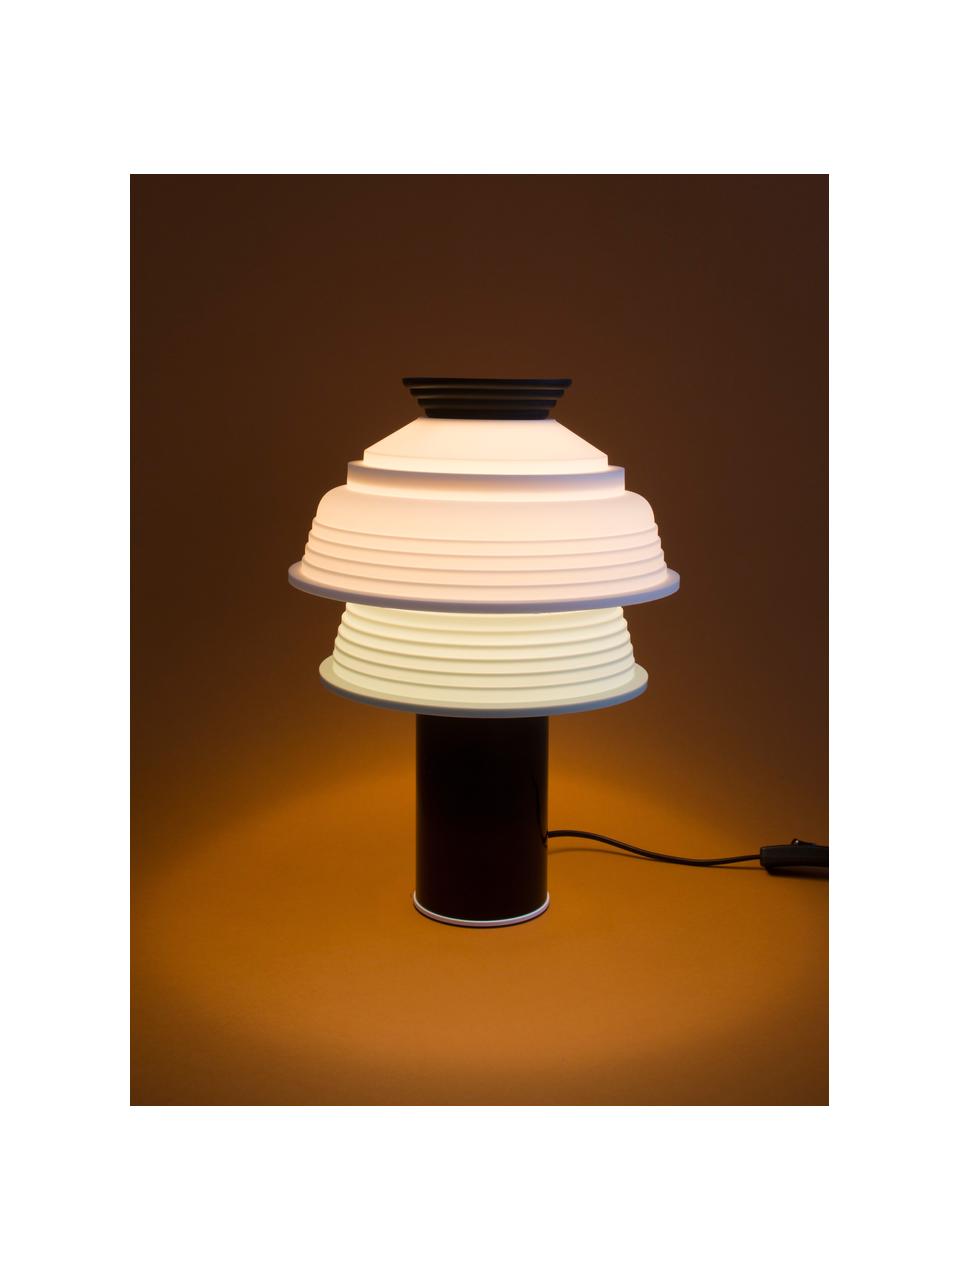 Malá stolní lampa TL4, Černá, bílá, světle zelená, Ø 26 cm, V 25 cm